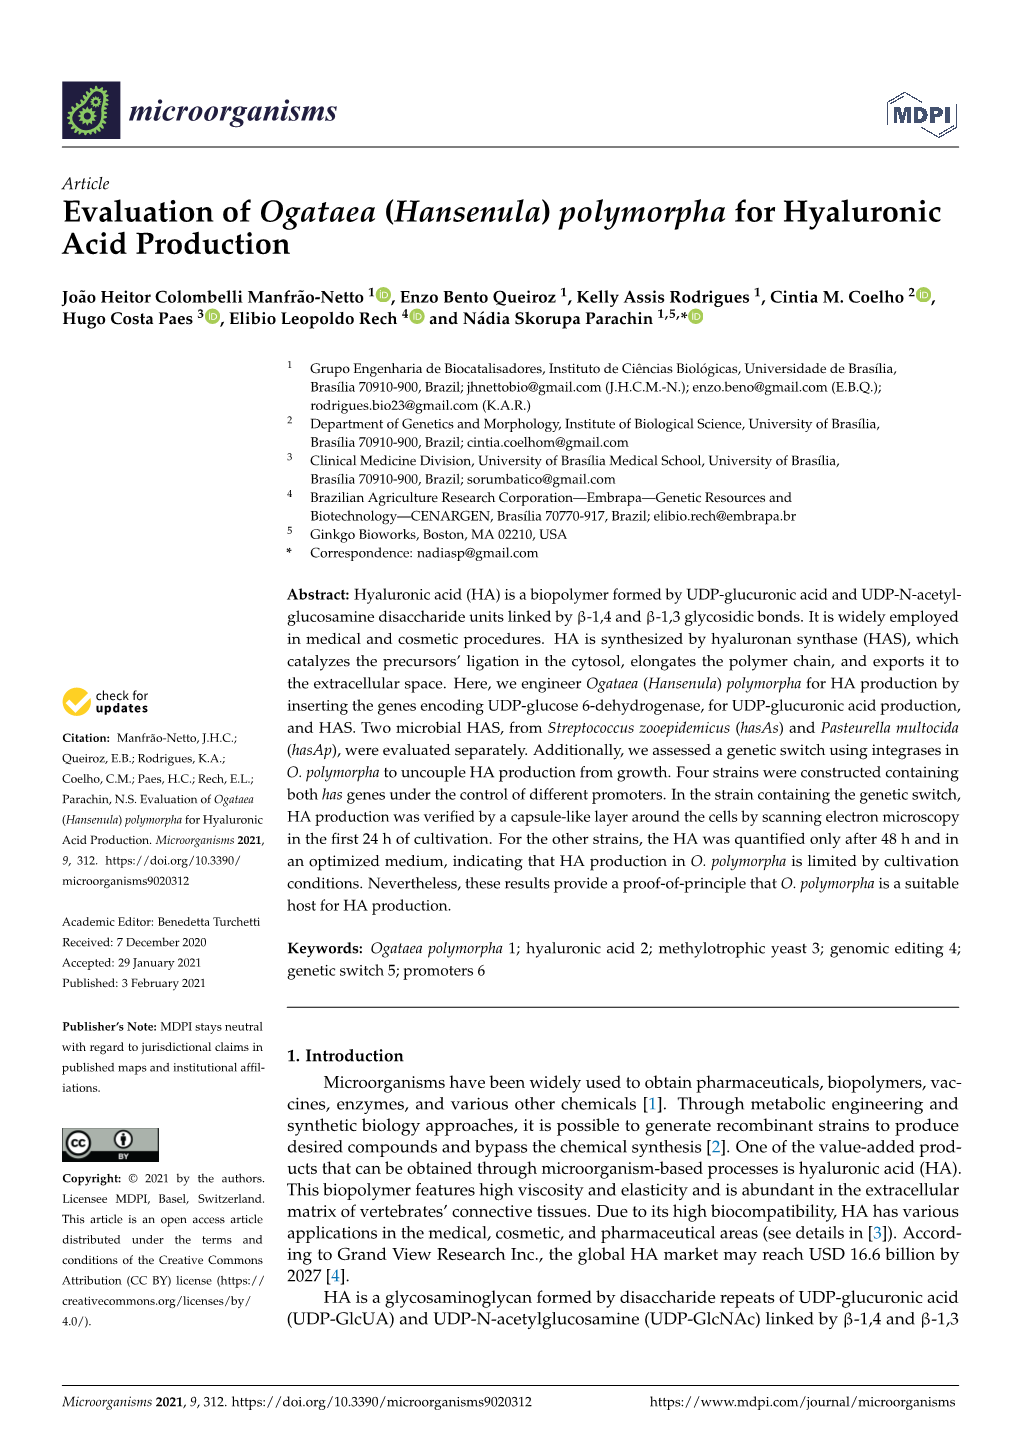 Evaluation of Ogataea (Hansenula) Polymorpha for Hyaluronic Acid Production